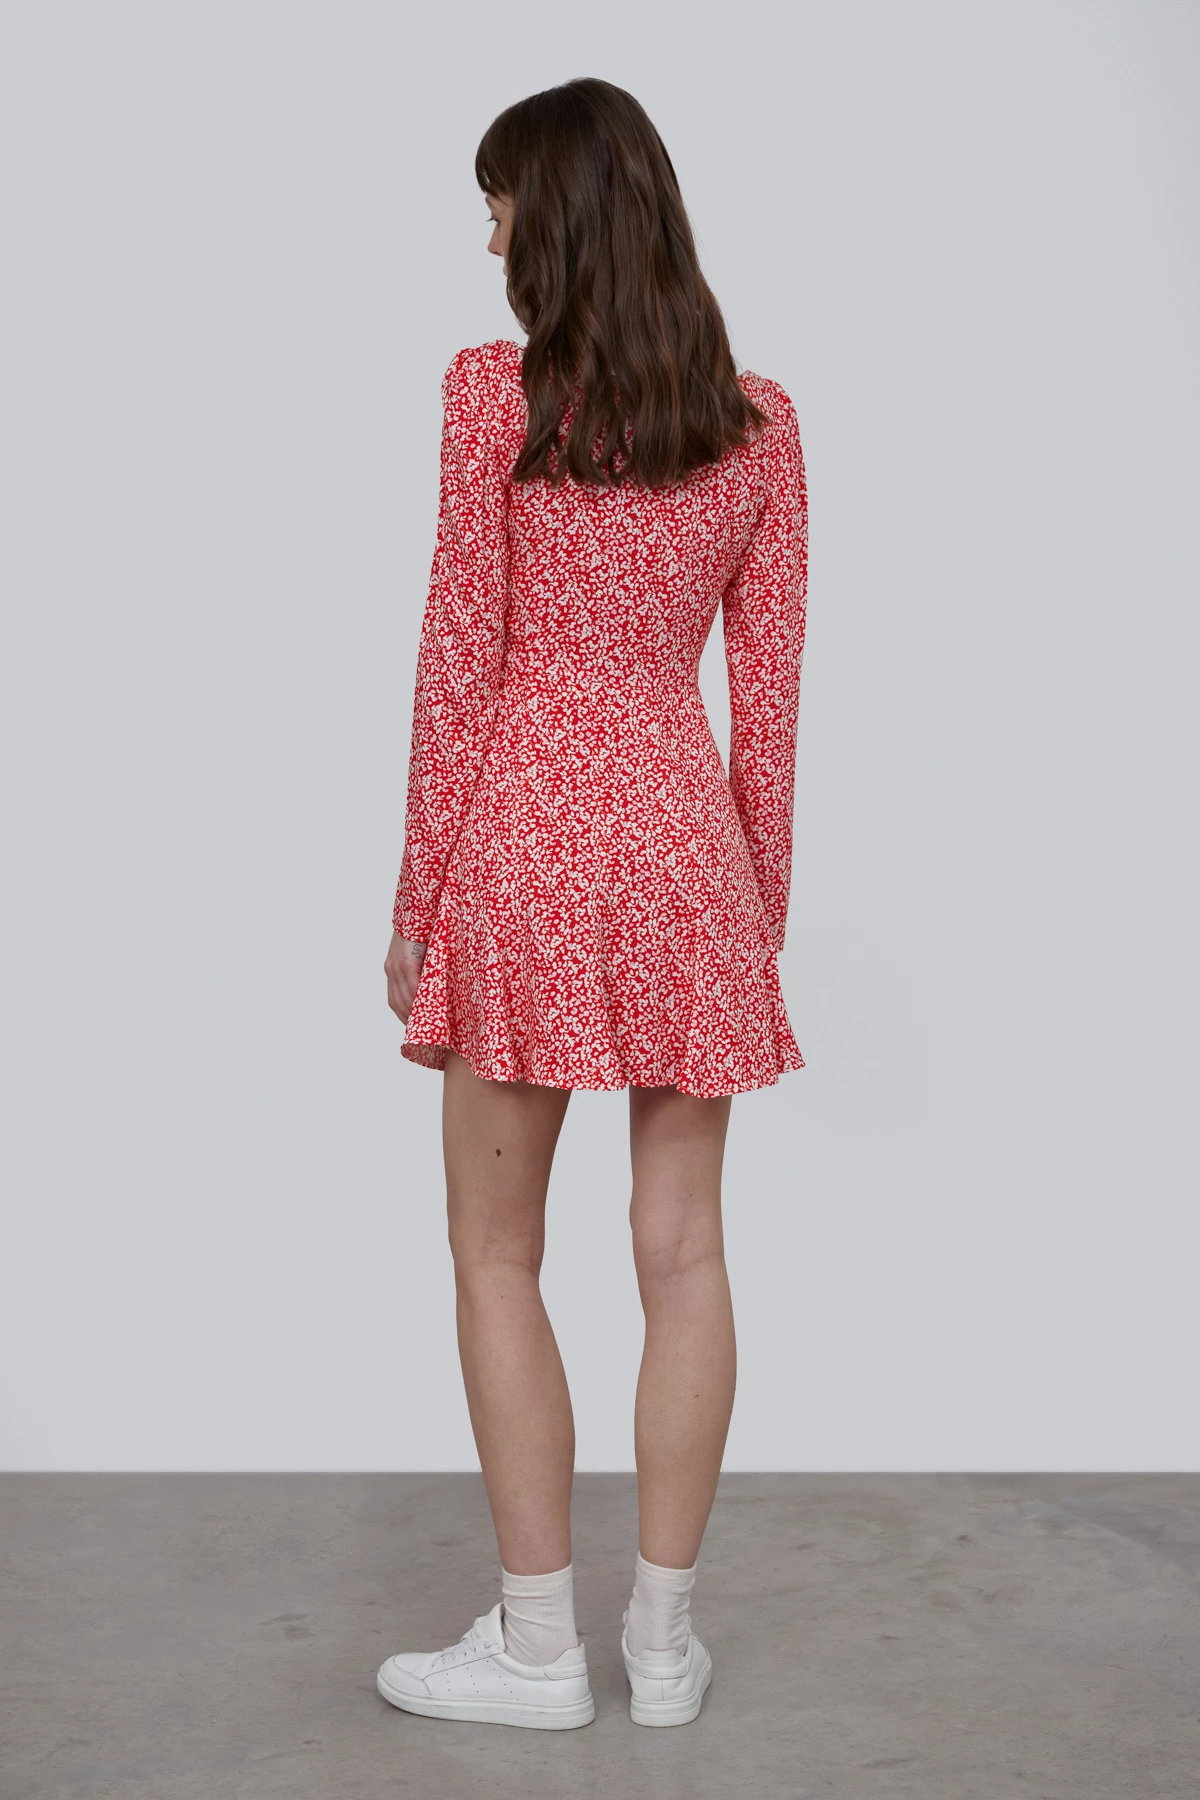 Червона коротка сукня в принт "молочні краплі" зі 100% віскози, фото 5